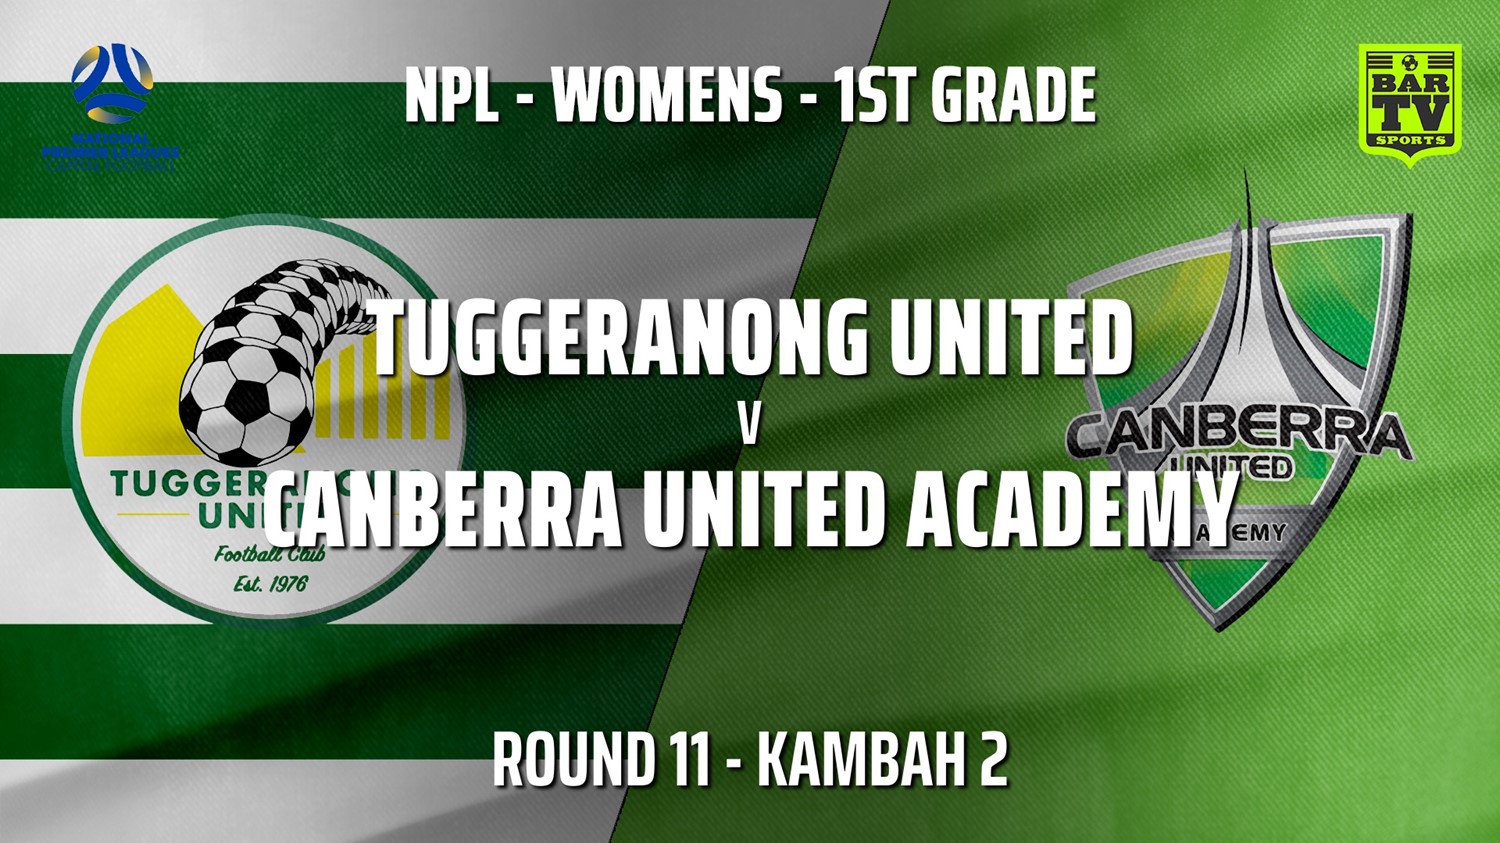 210627-Capital Womens Round 11 - Tuggeranong United FC (women) v Canberra United Academy Minigame Slate Image